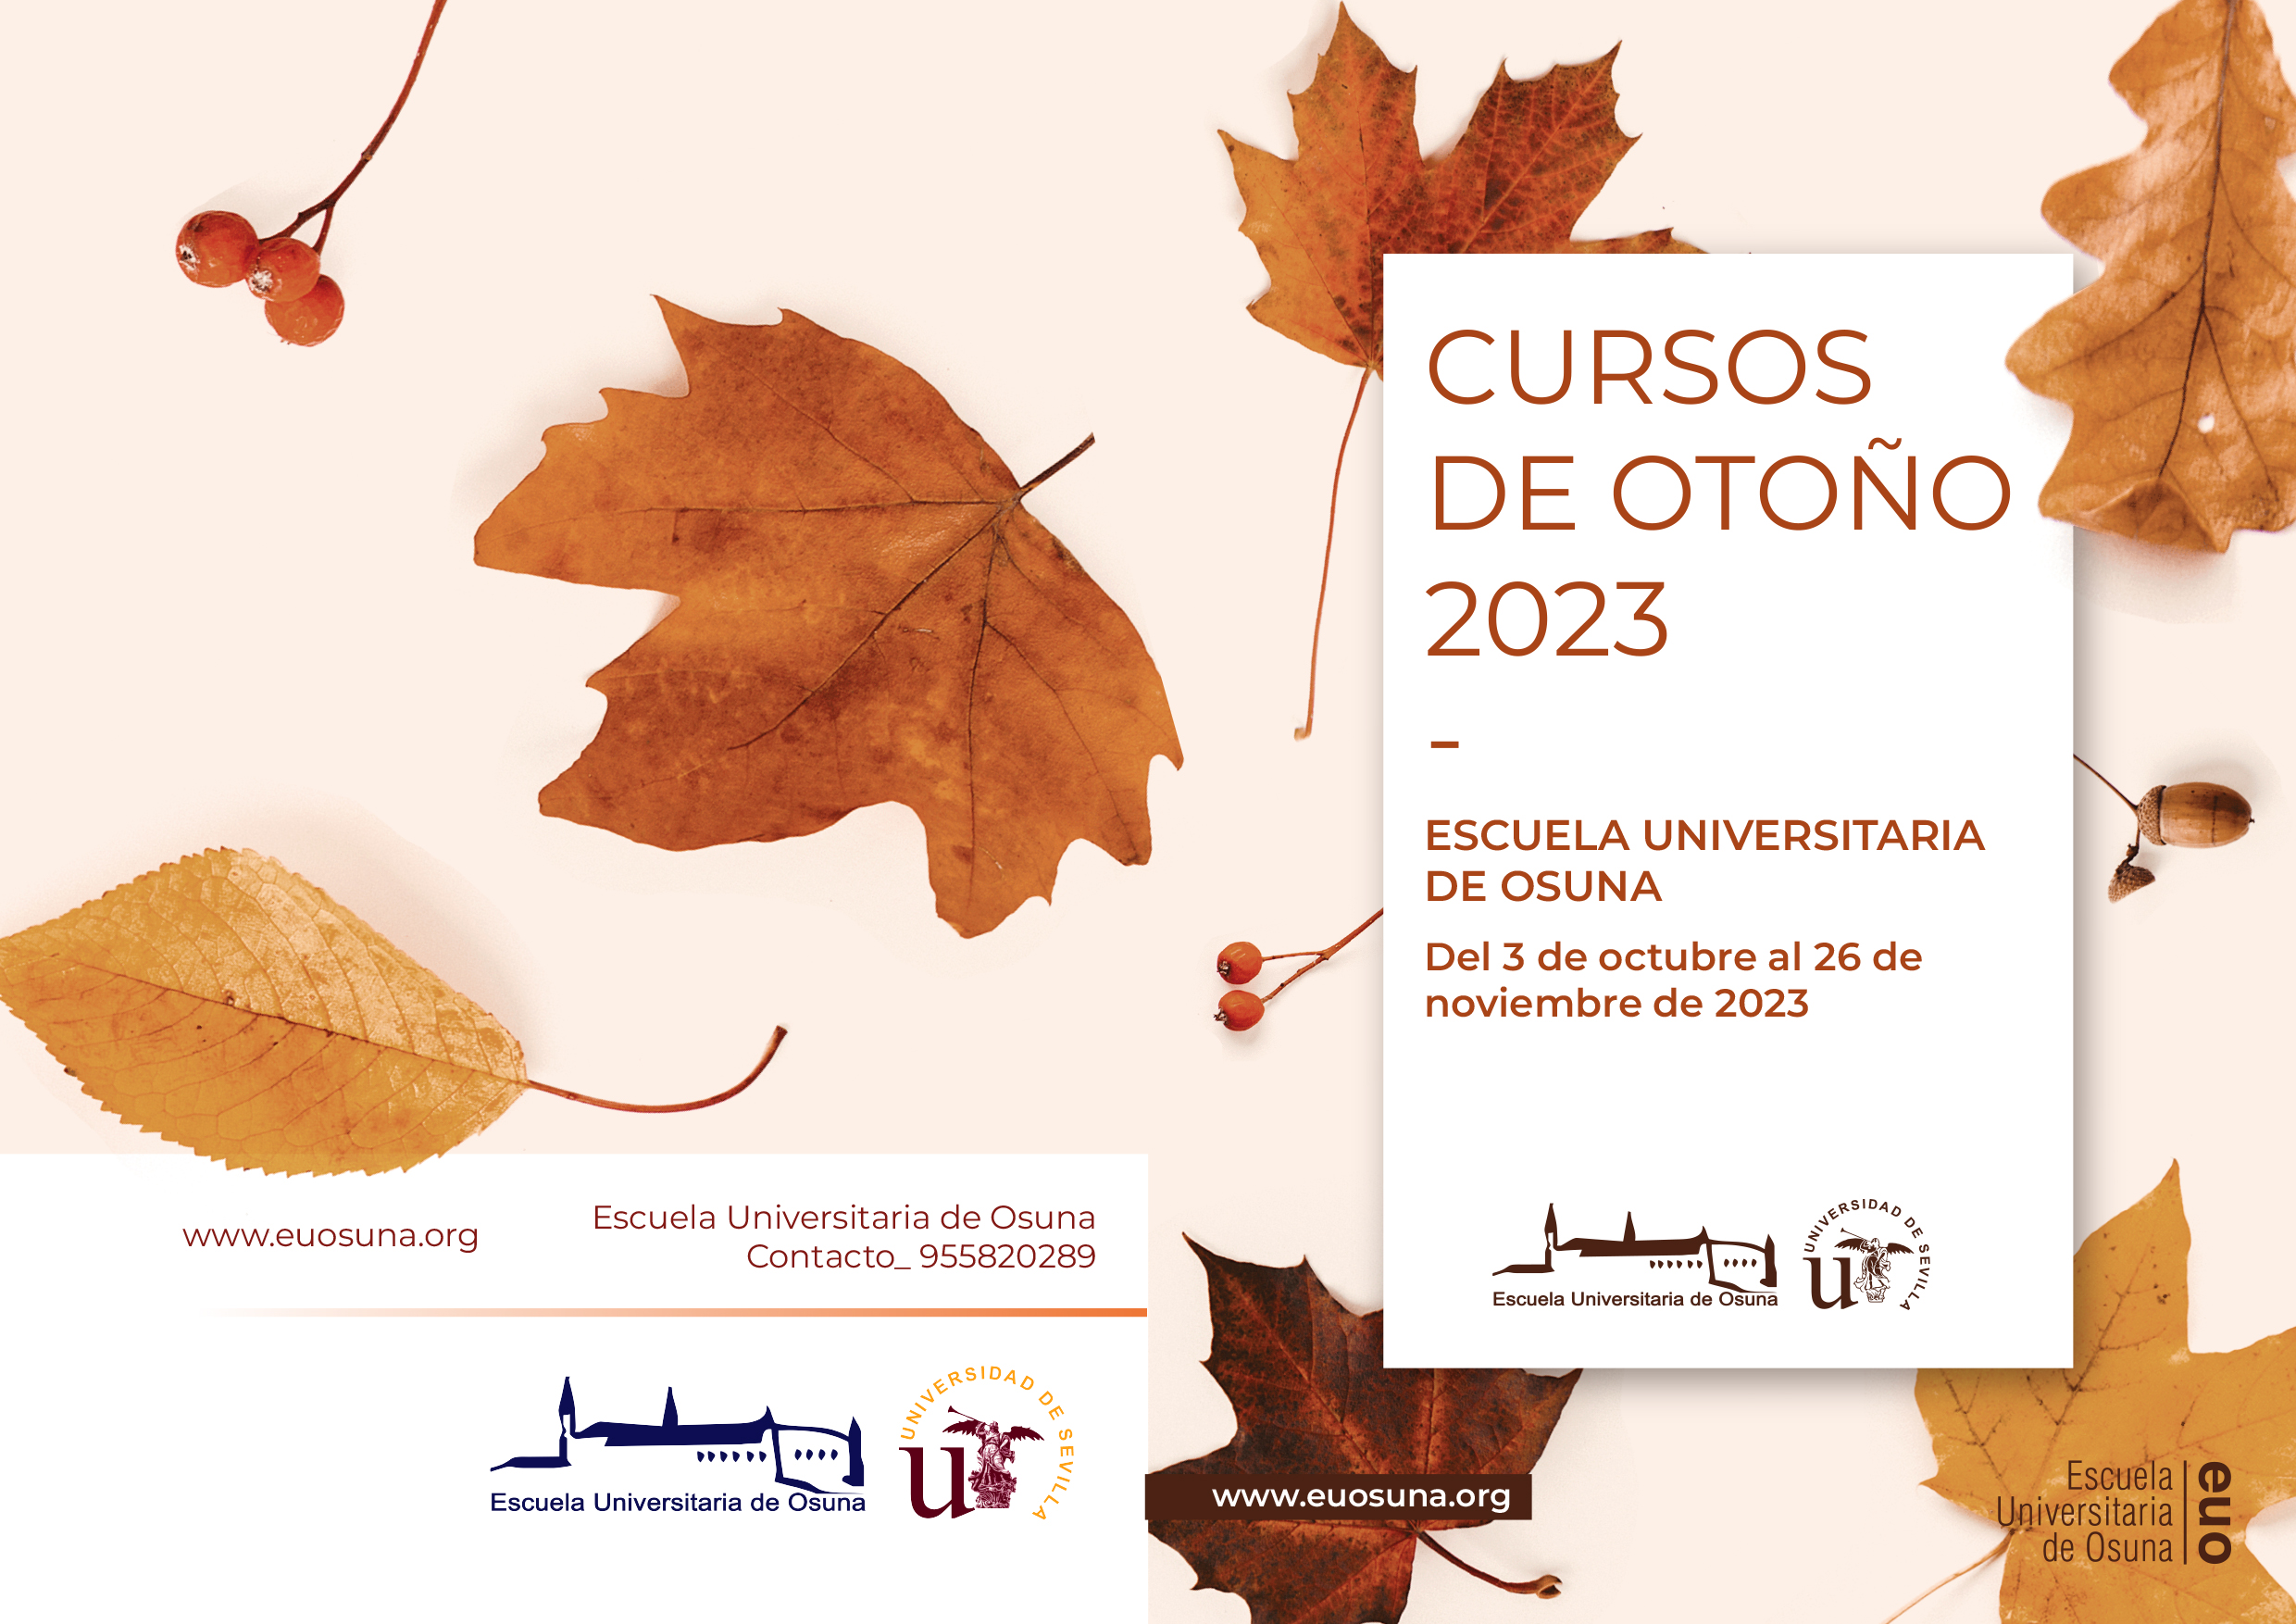 NOTA DE PRENSA | La XX edición de los Cursos de Otoño de la Escuela Universitaria de Osuna se celebrará durante el mes de octubre